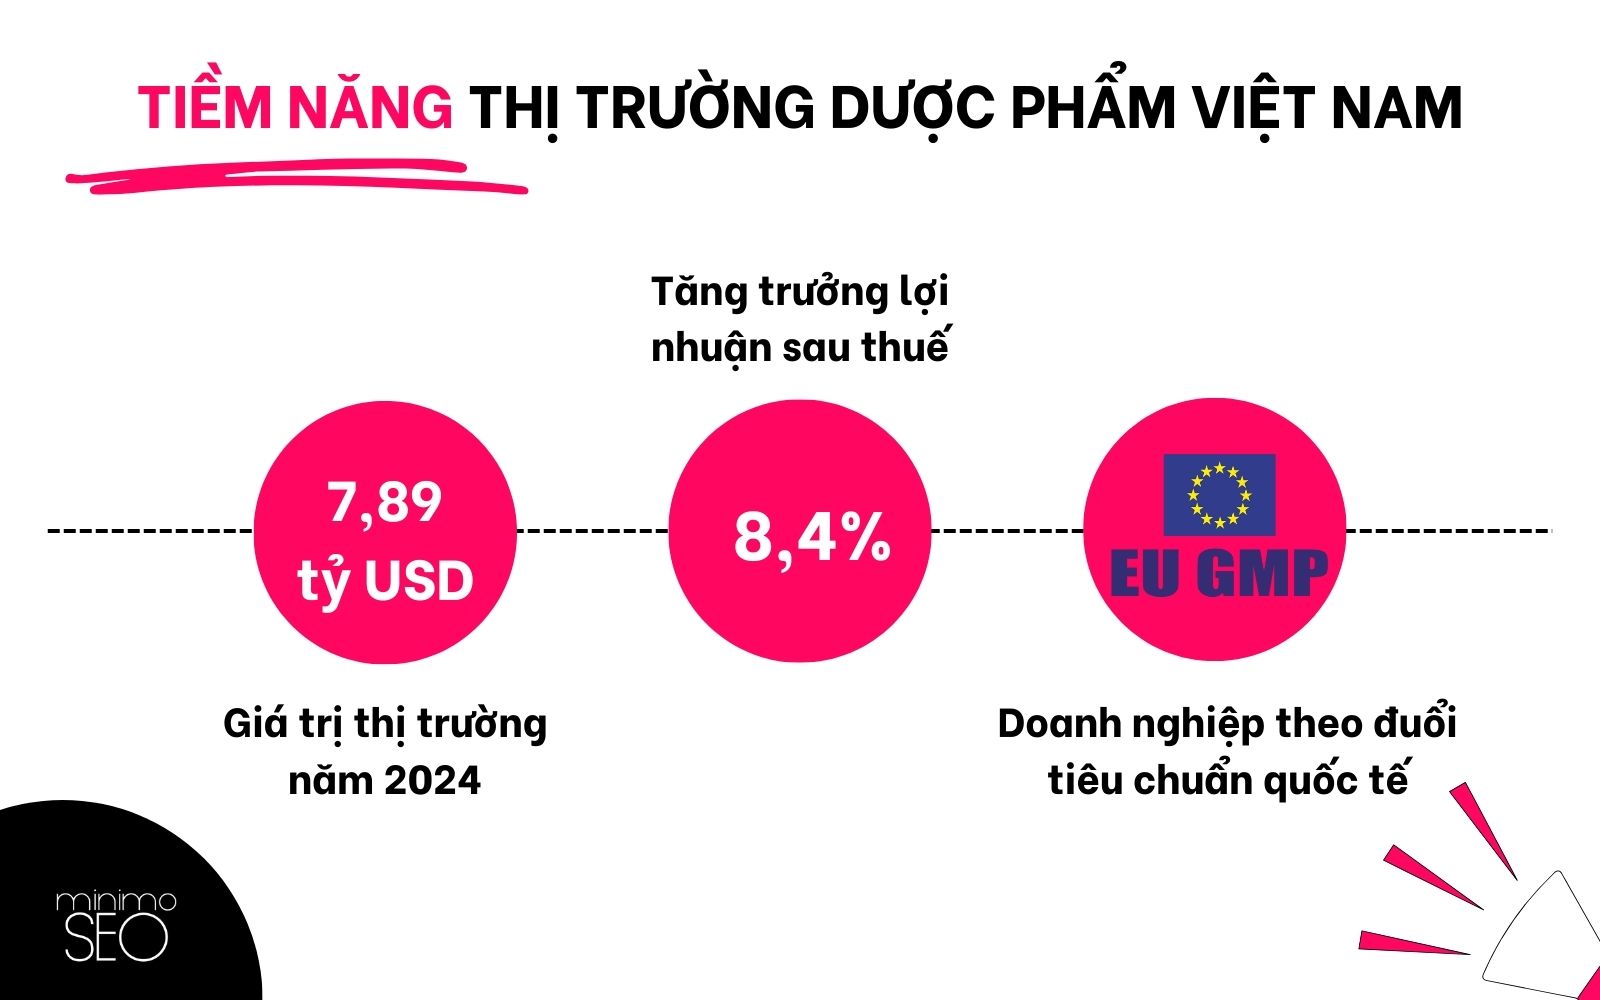 Tiềm năng thị trường dược phẩm Việt Nam